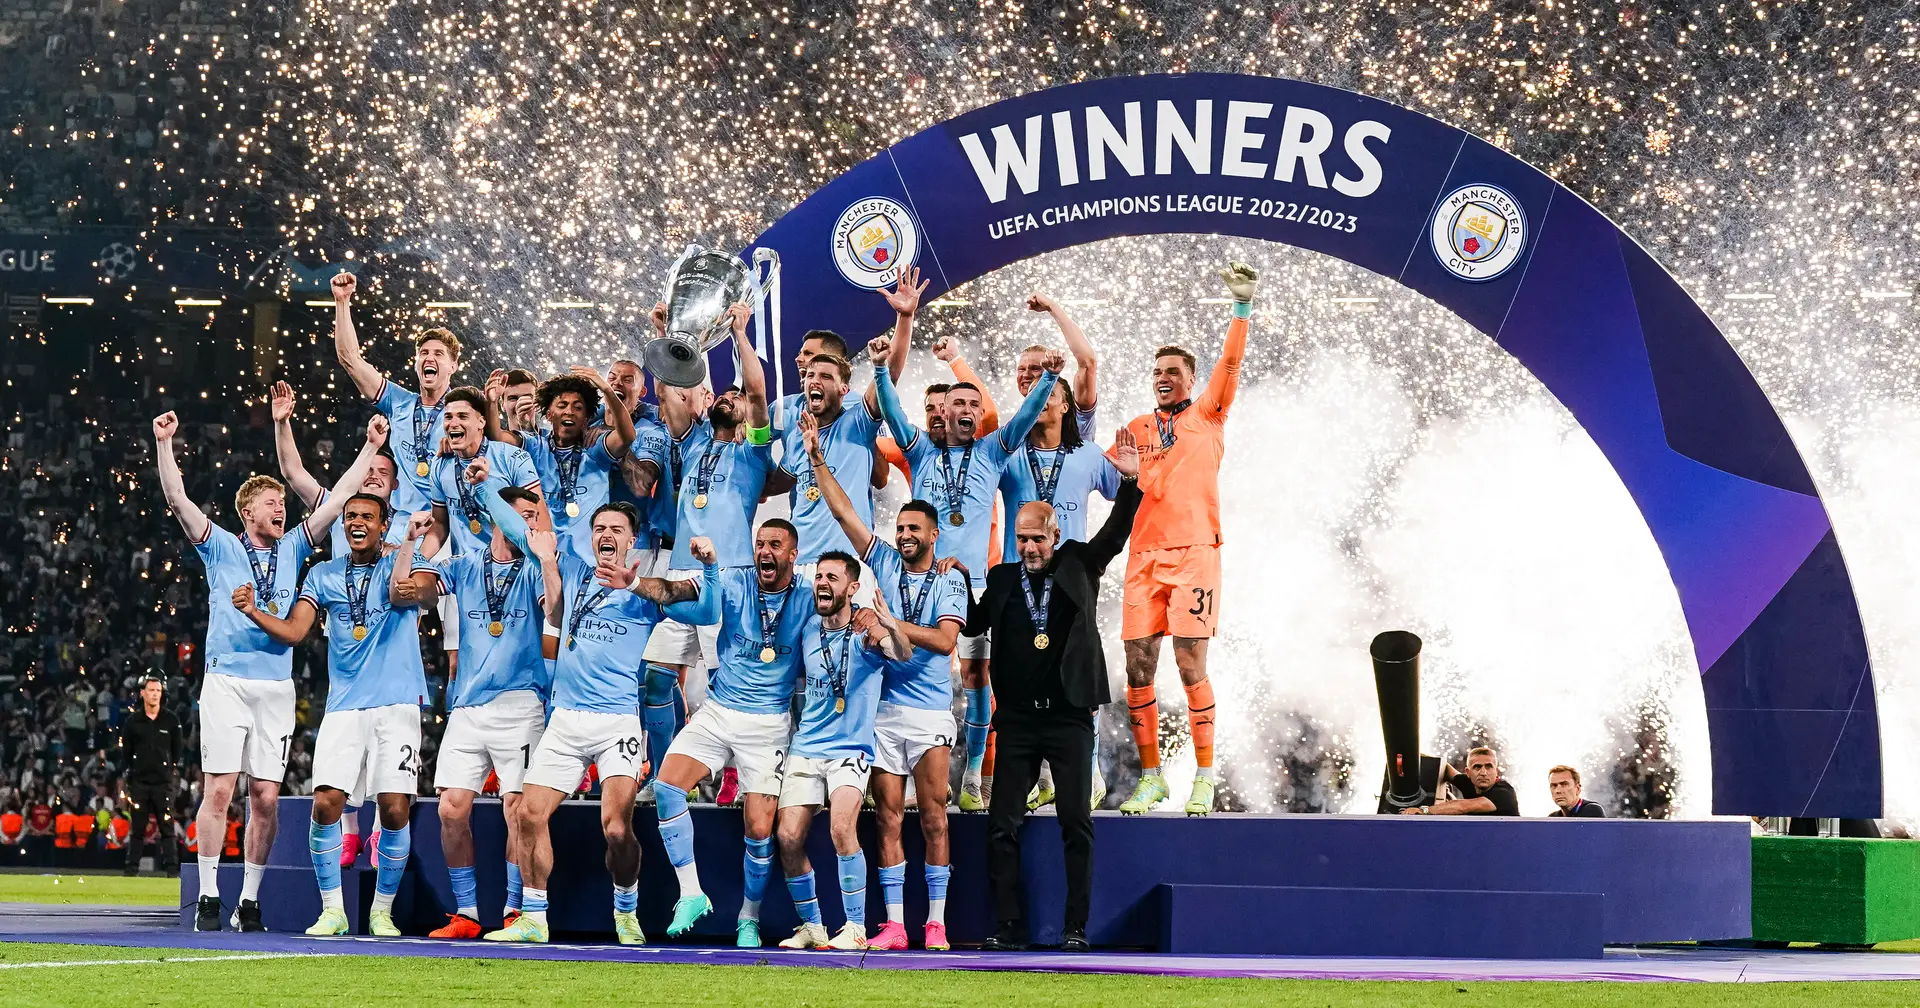 Vitória do Manchester City mostra que cada vez mais o futebol terá